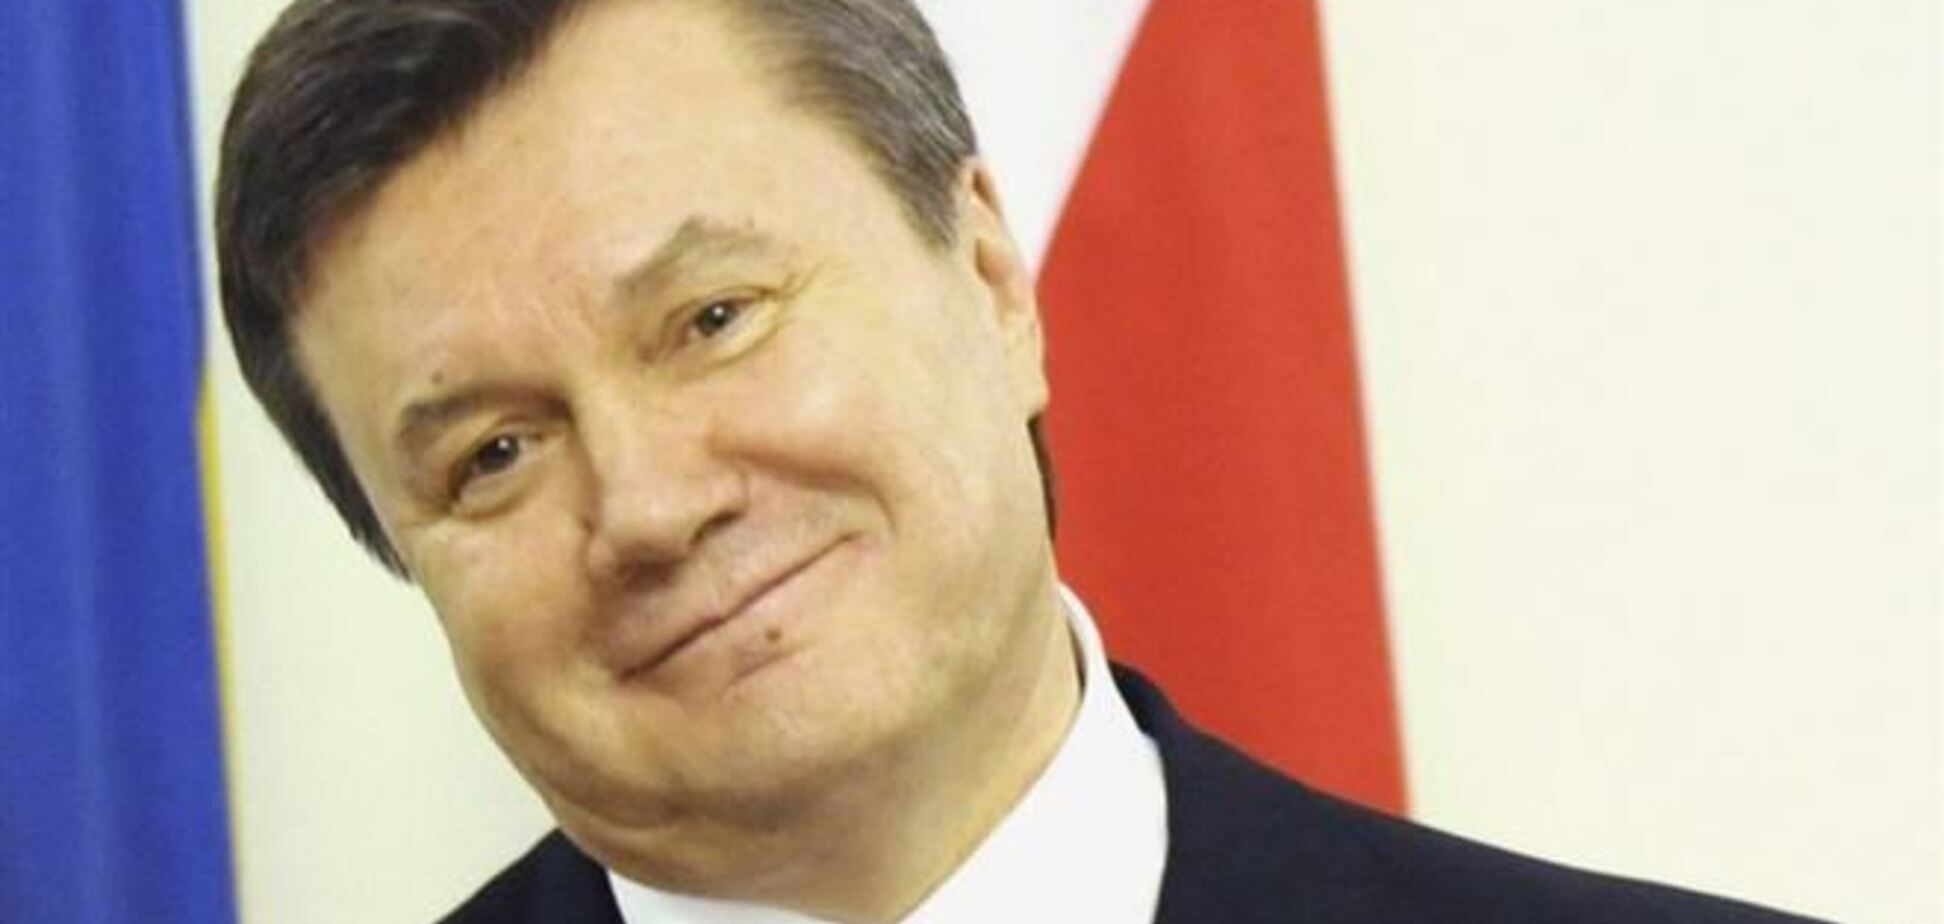 Вищий адміністративний суд відмовився починати процес над Януковичем 